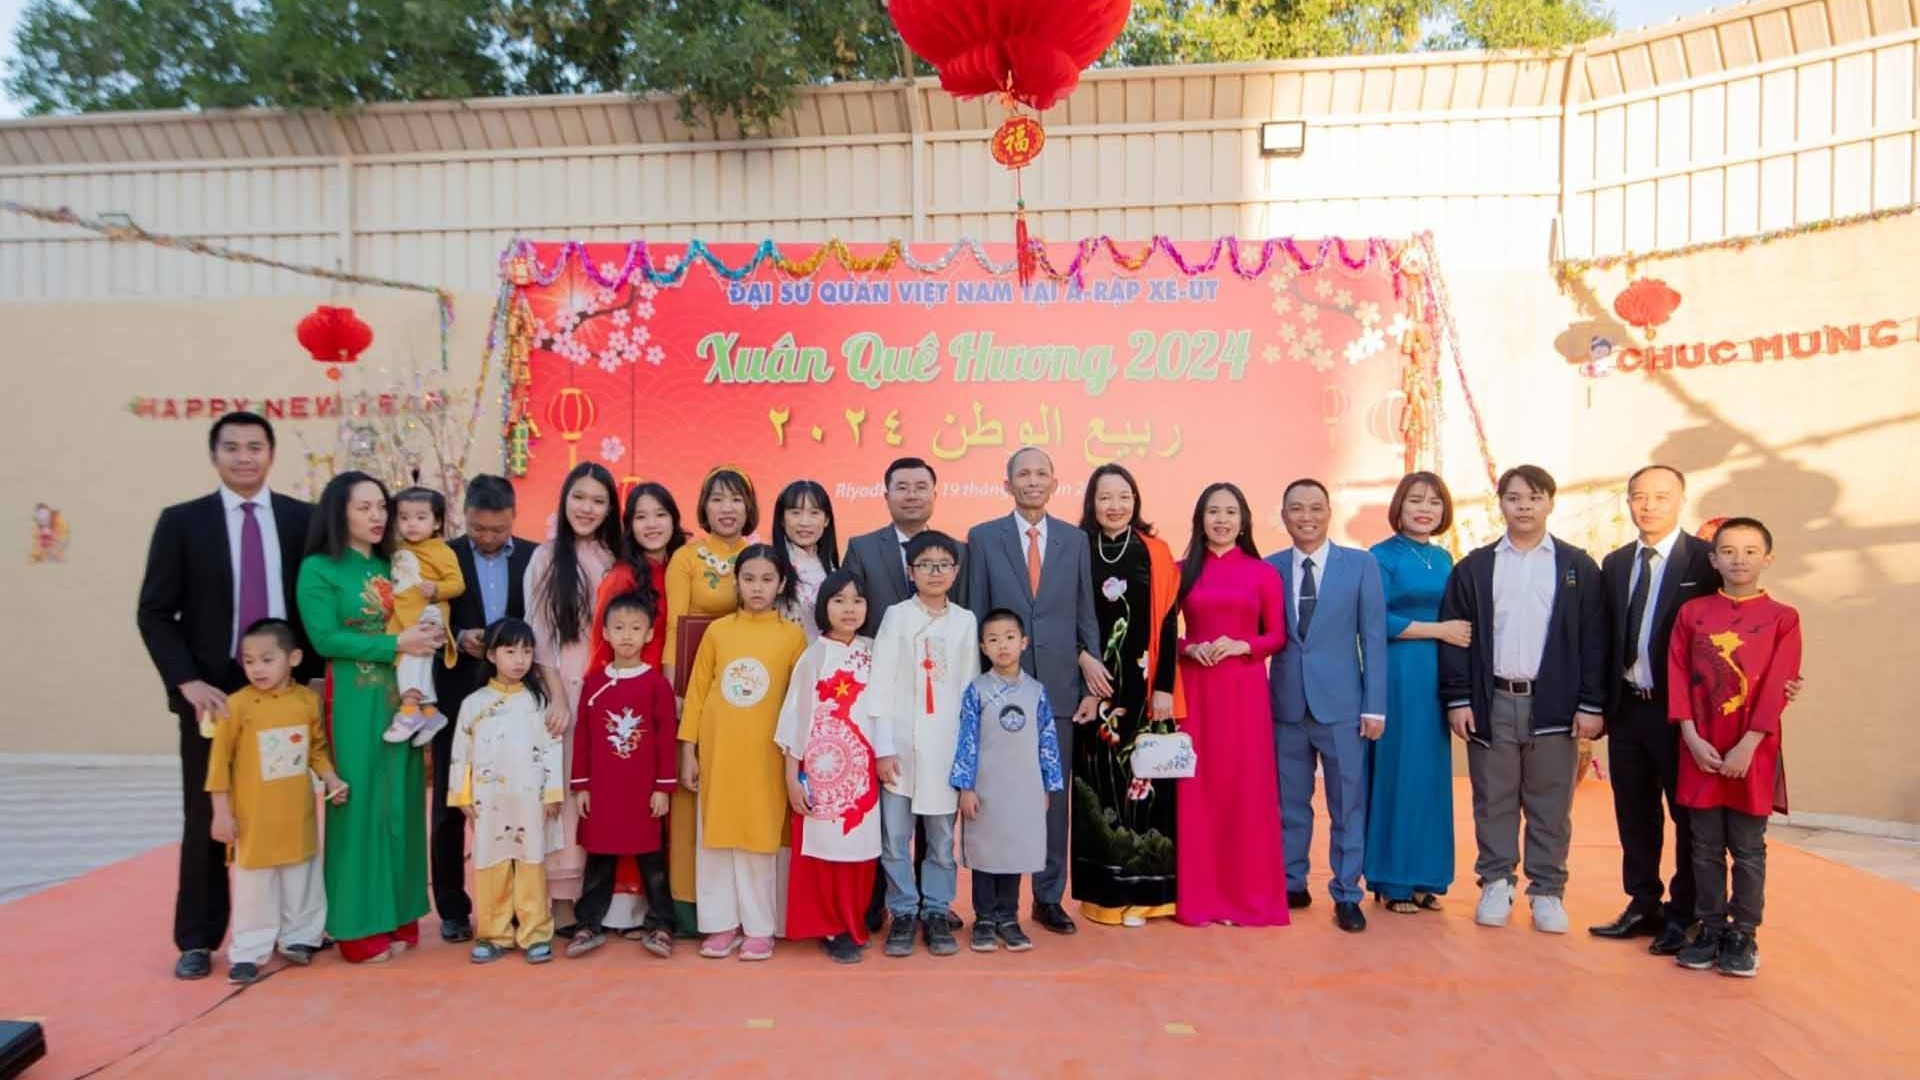 Đại sứ quán Việt Nam tại Saudi Arabia tổ chức chương trình Xuân Quê hương Giáp Thìn 2024